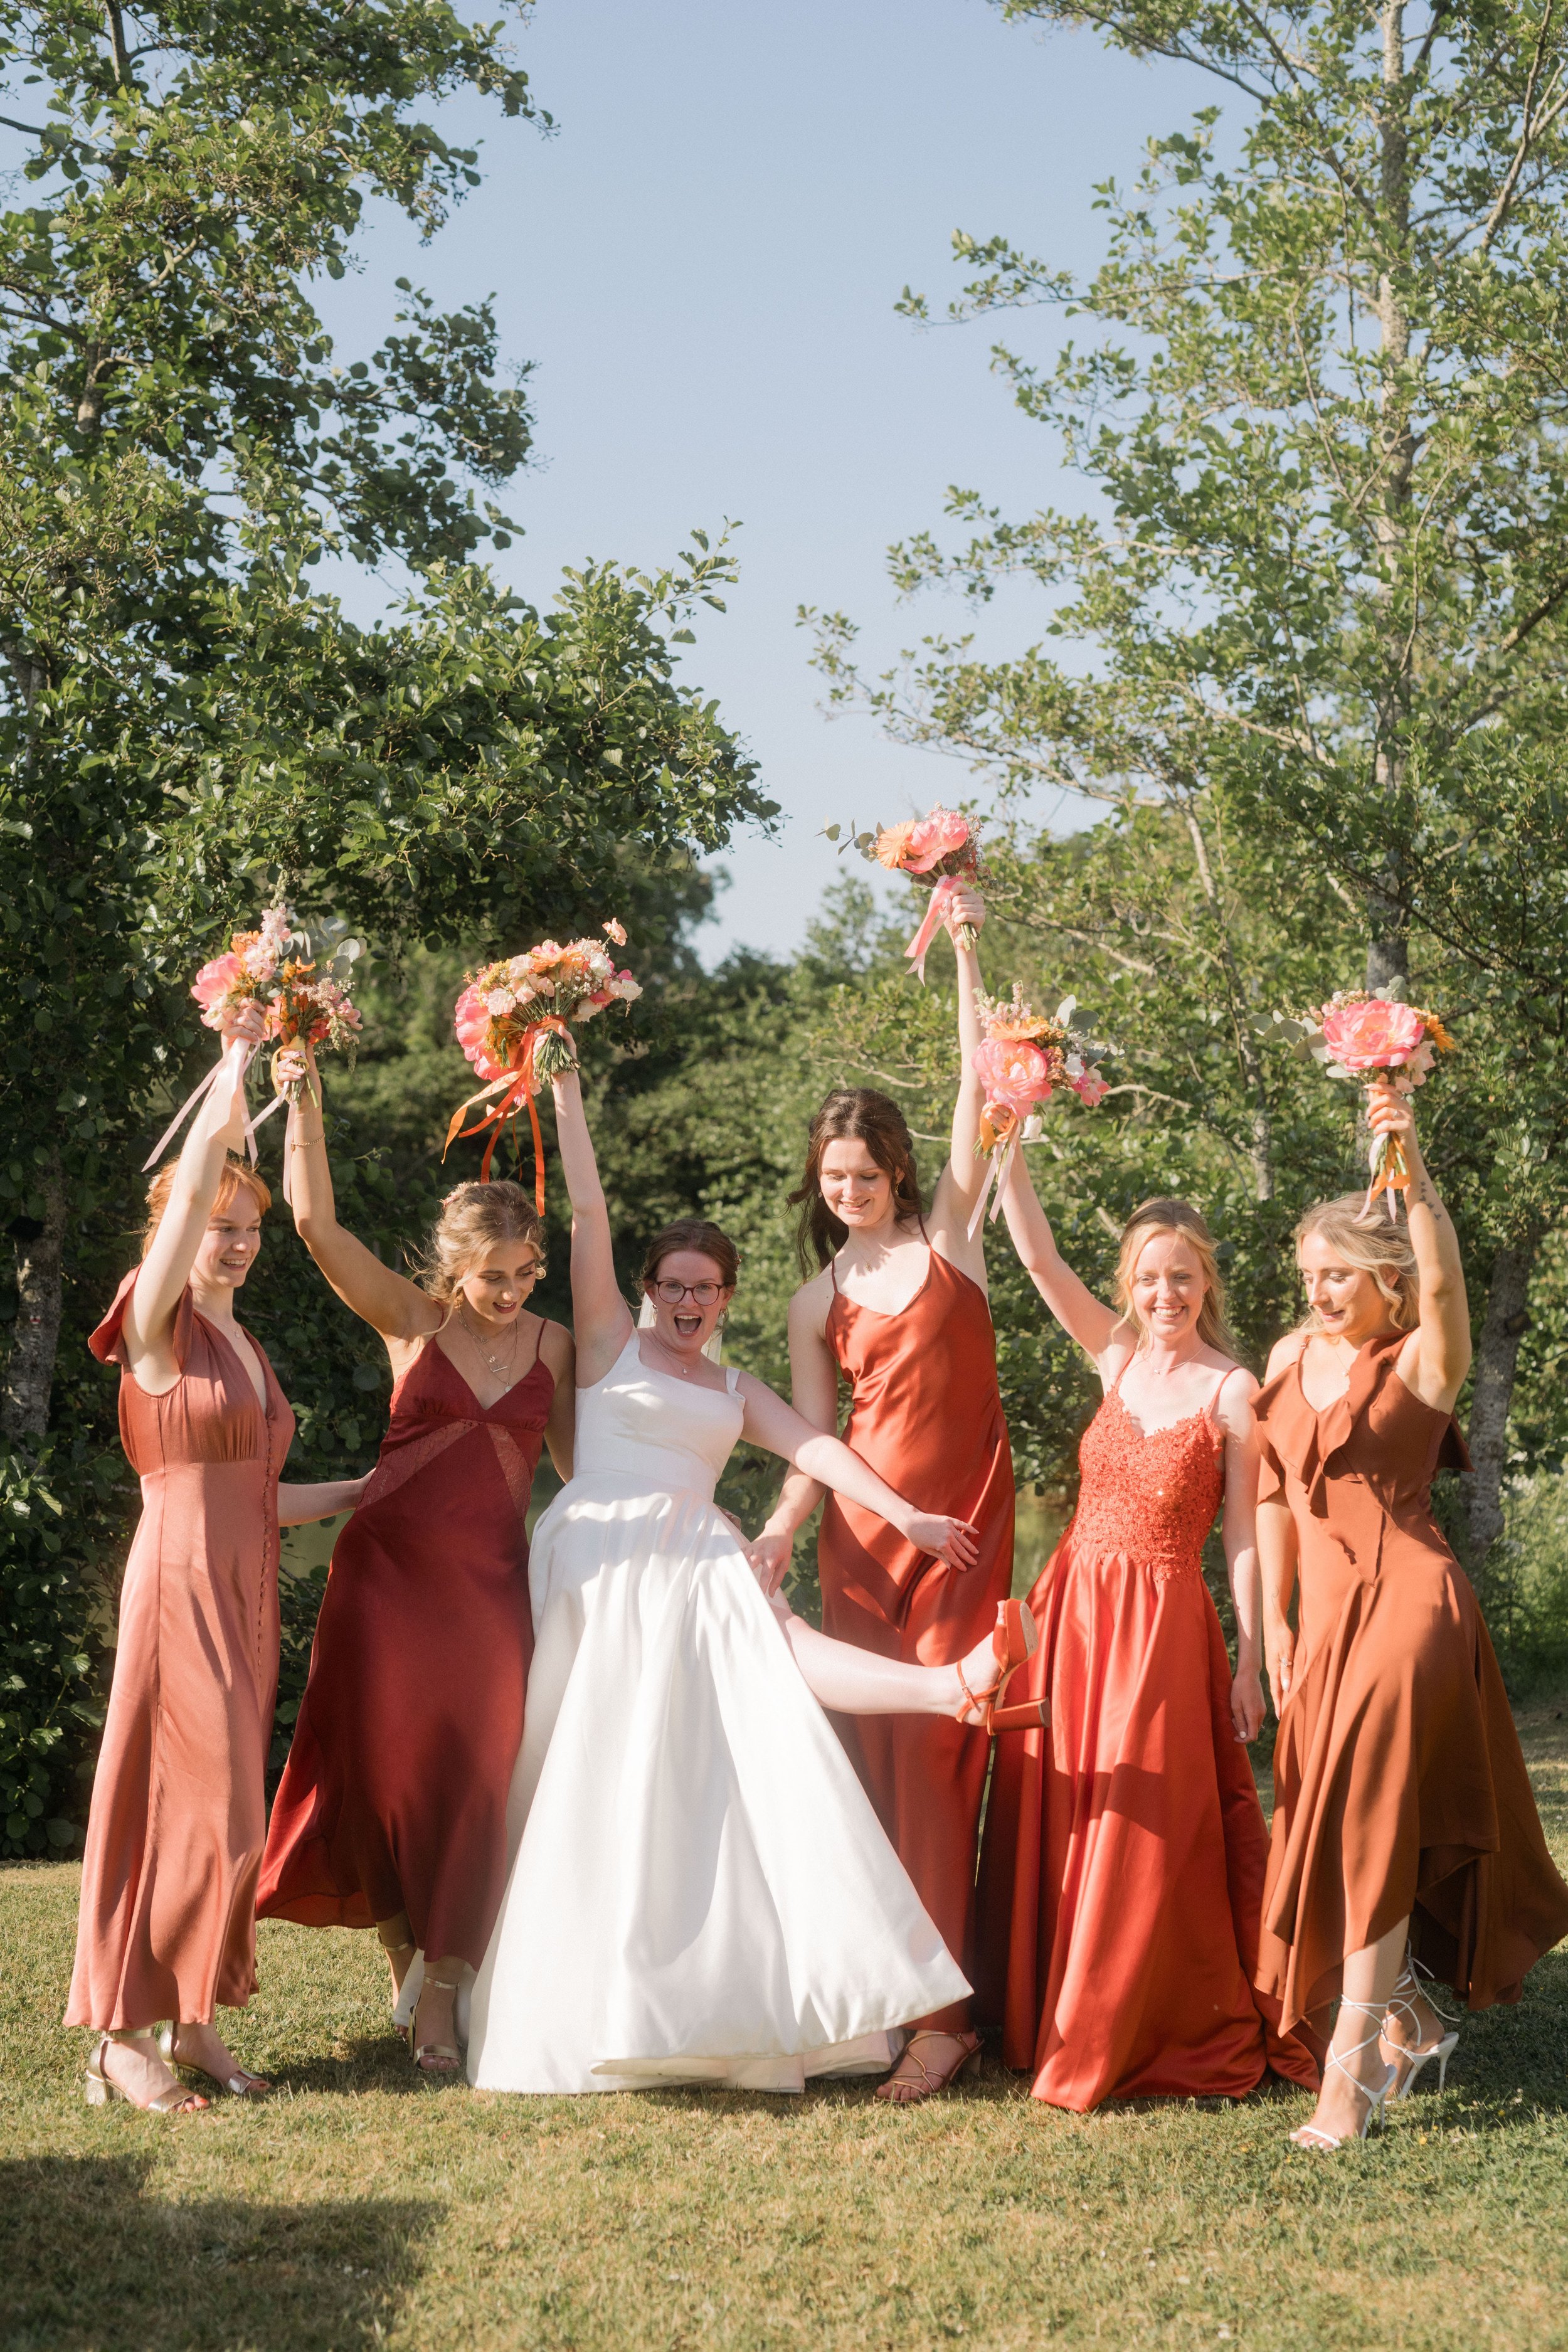  Bride having fun with her bridesmaid in orange dresses 